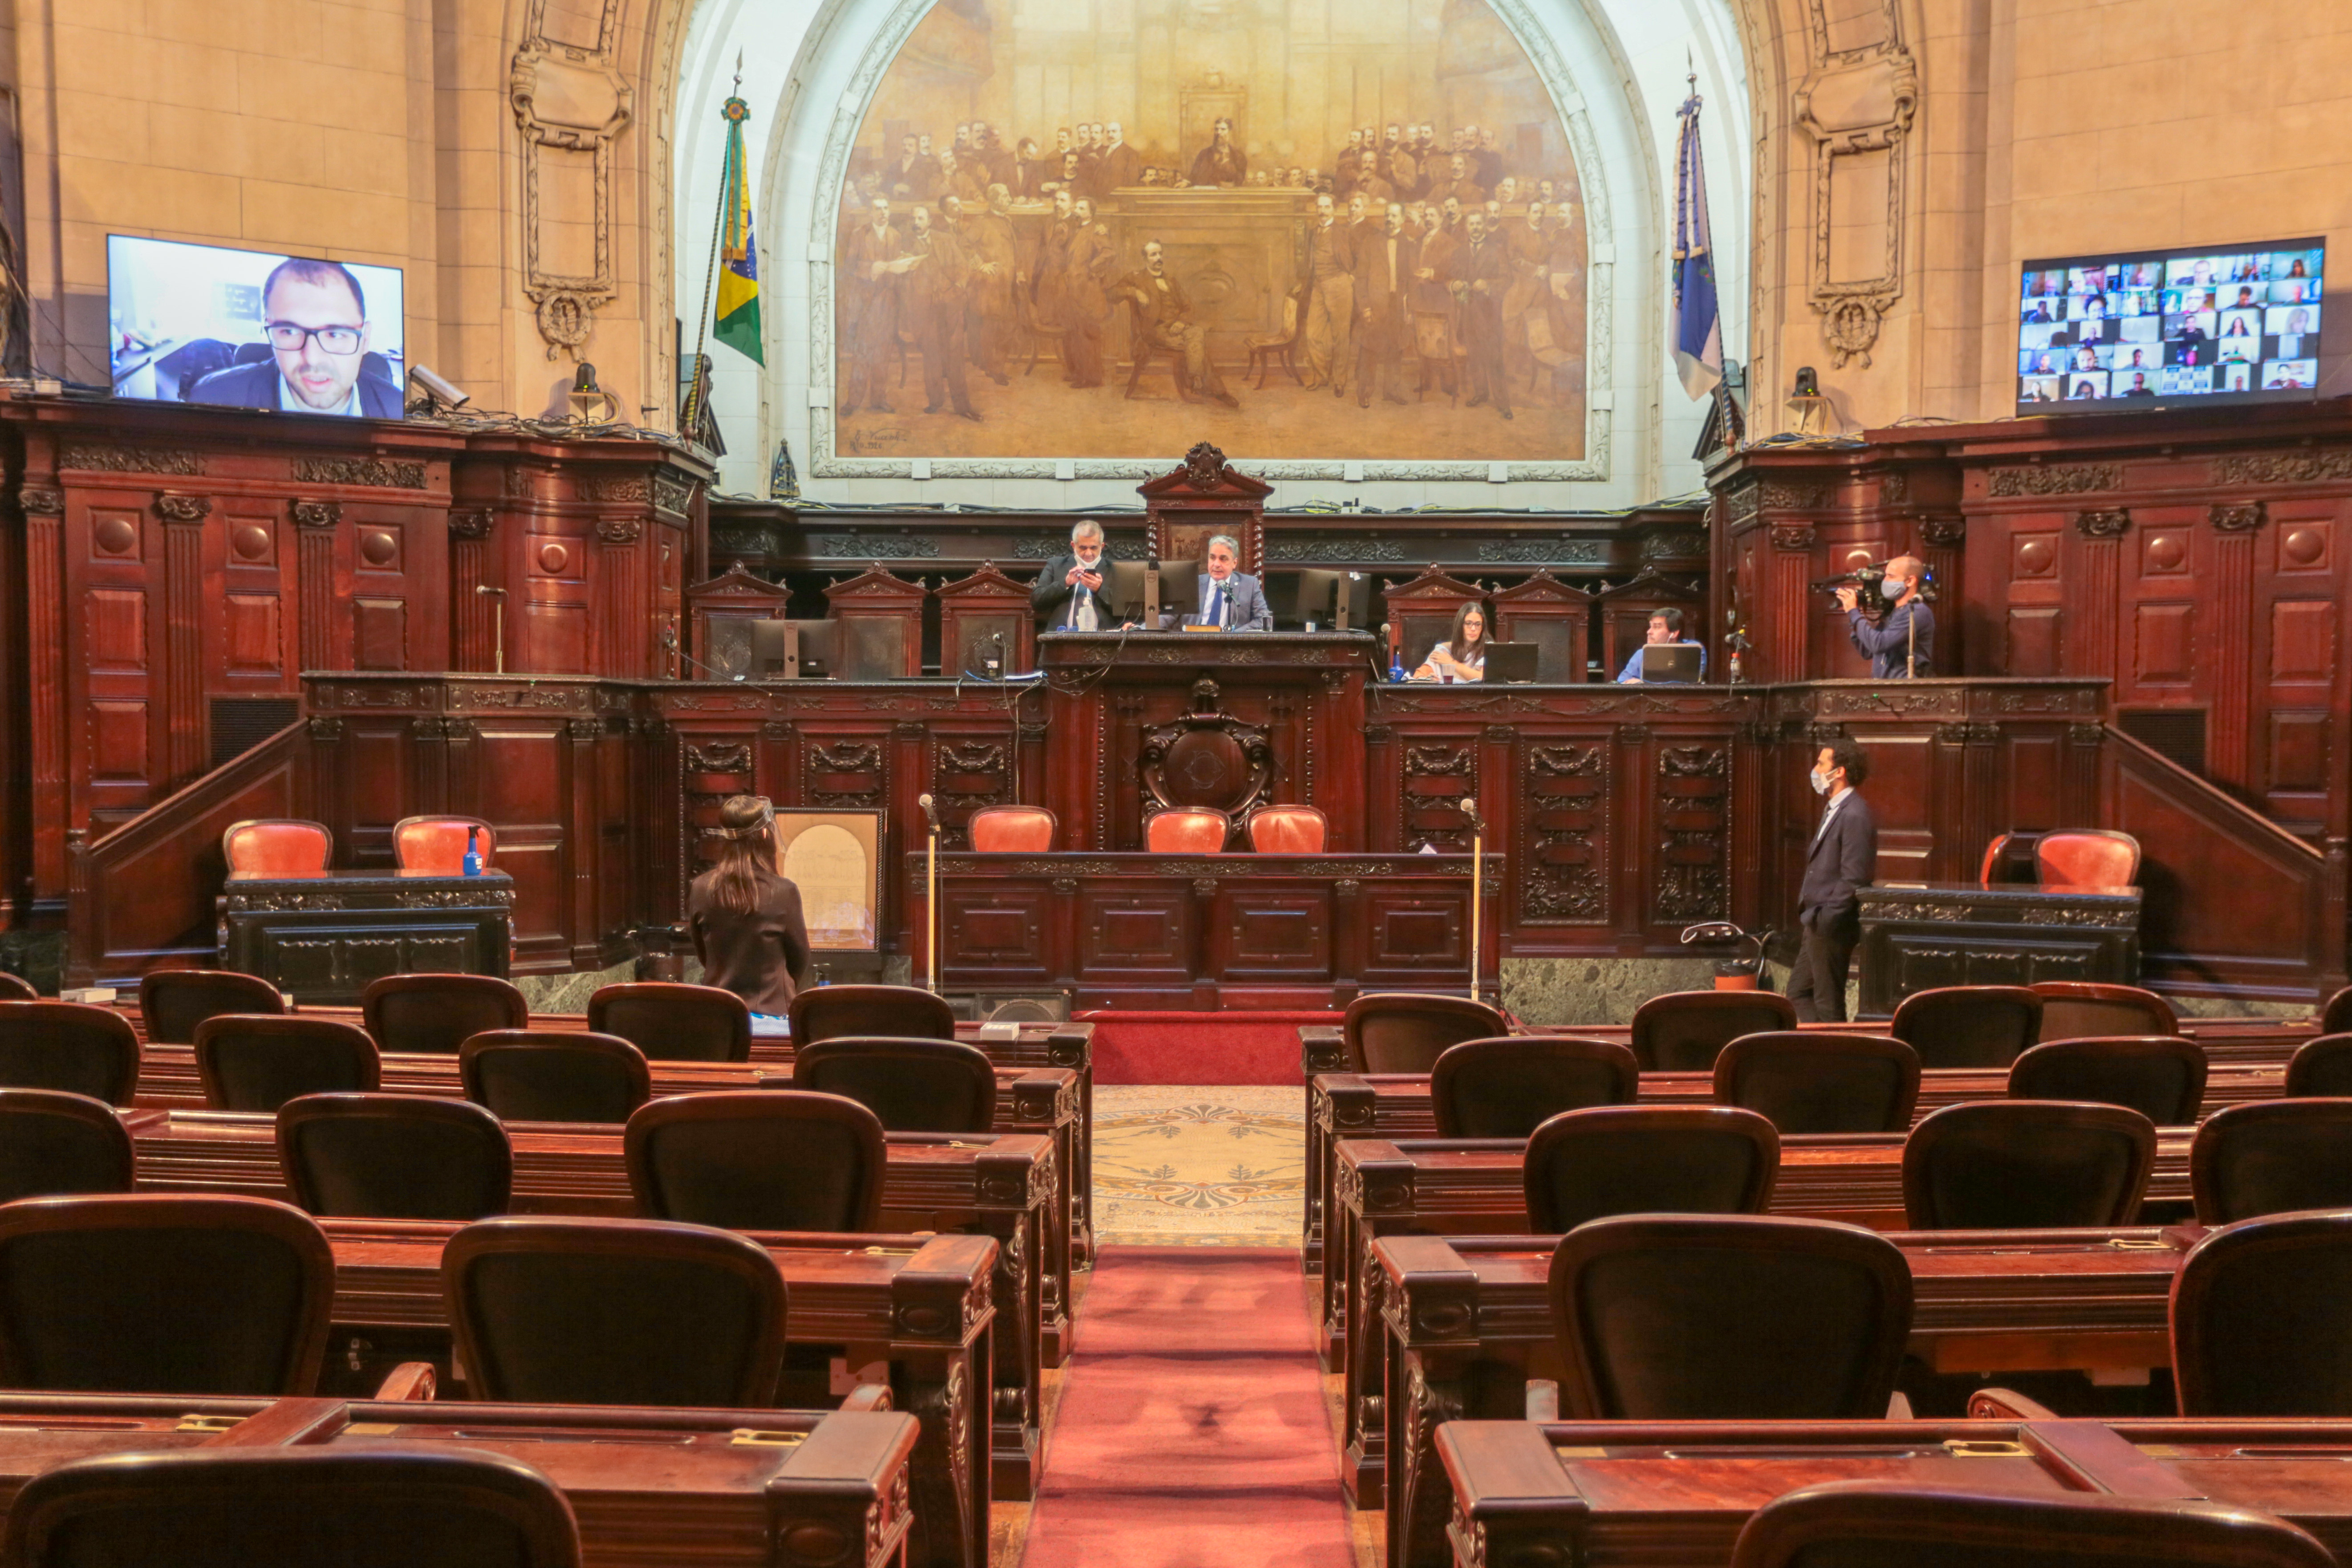 Assembléia Legislativa do Estado do Rio de Janeiro